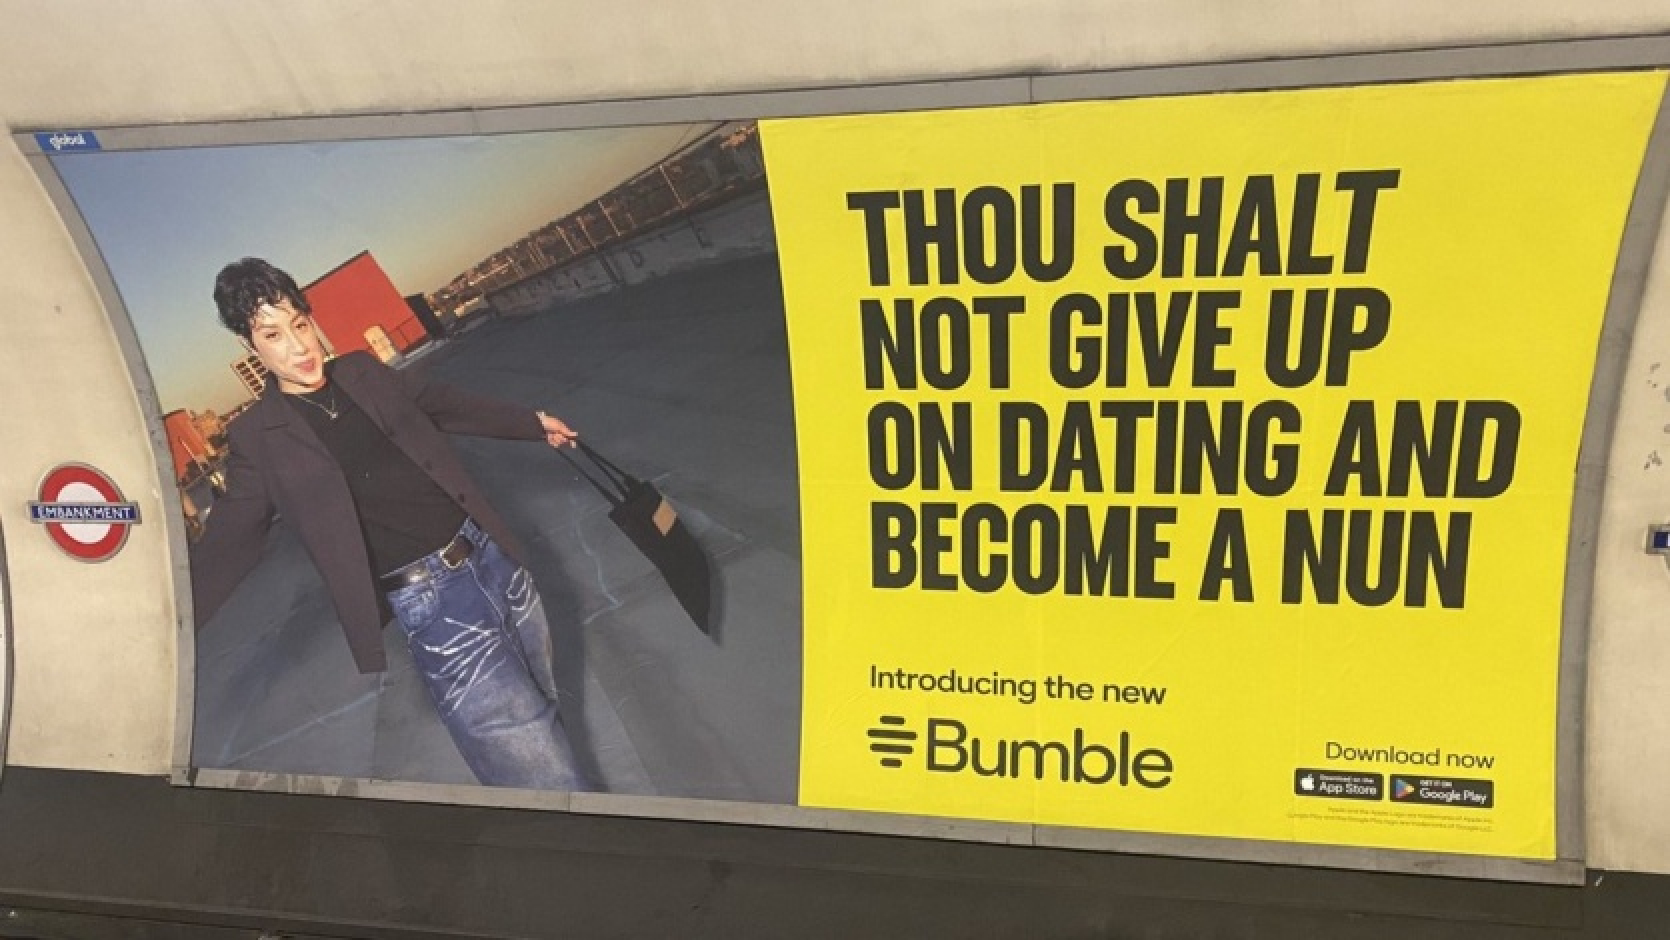 "Neesi mūķene - neatsaki randiņus". Iepazīšanās pakalpojums Bumble izvietoja "pret slavenībām vērstu" reklāmu un tagad atvainojas par to.